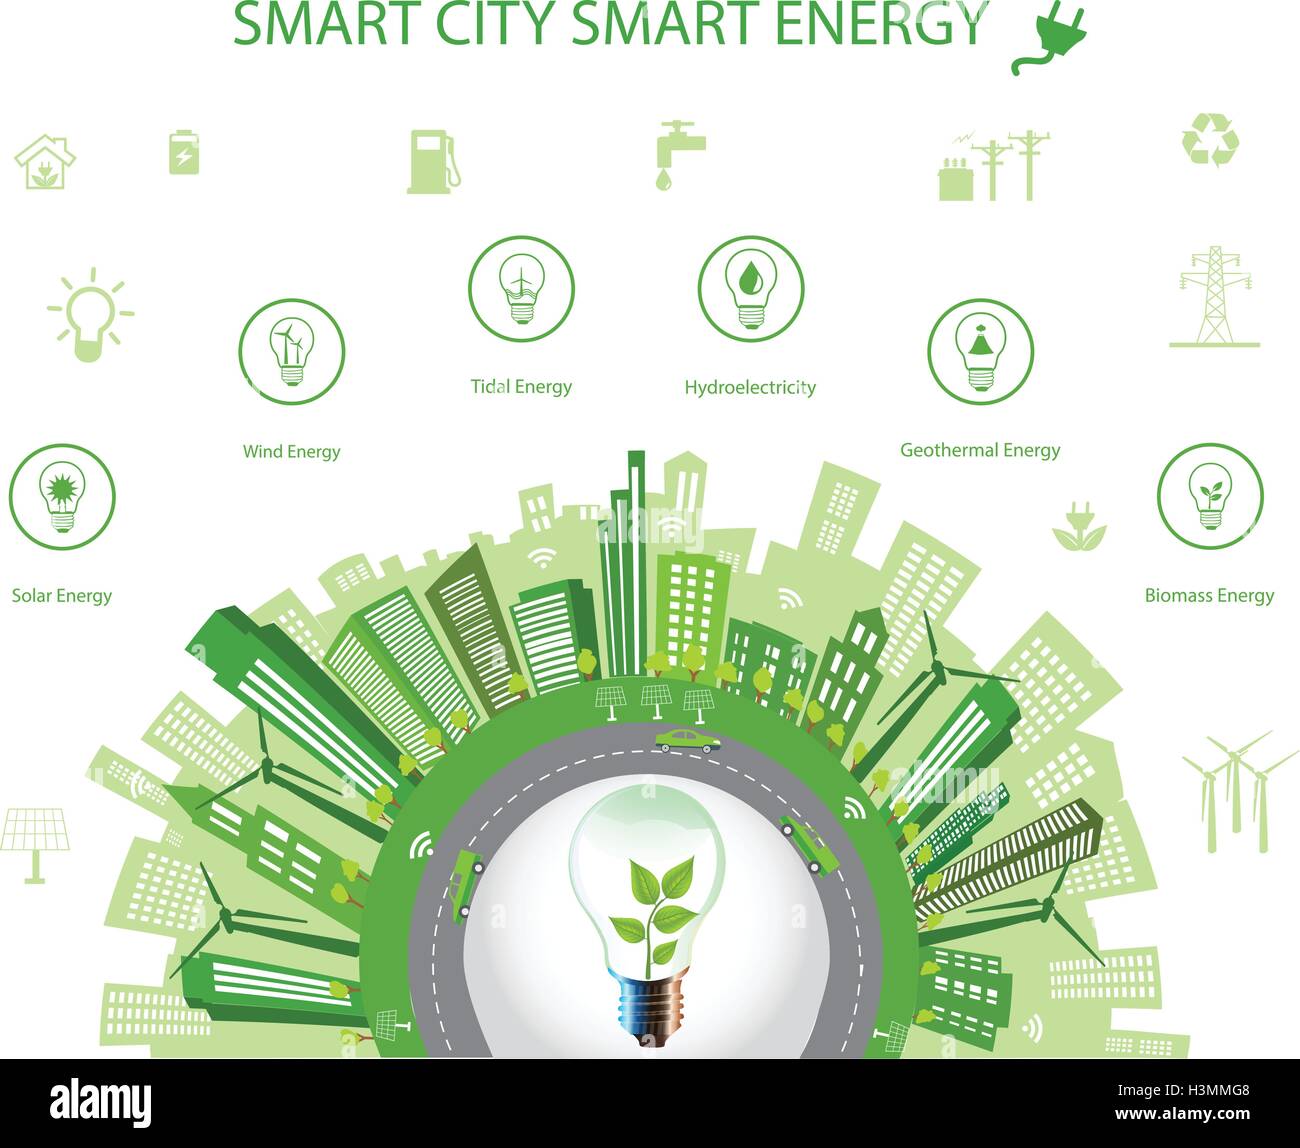 Concepto de ciudad ecológica.concepto de ciudad inteligente y Smart Energy con iconos diferentes para el medio ambiente. Diseño de la ciudad verde Green World Ilustración del Vector